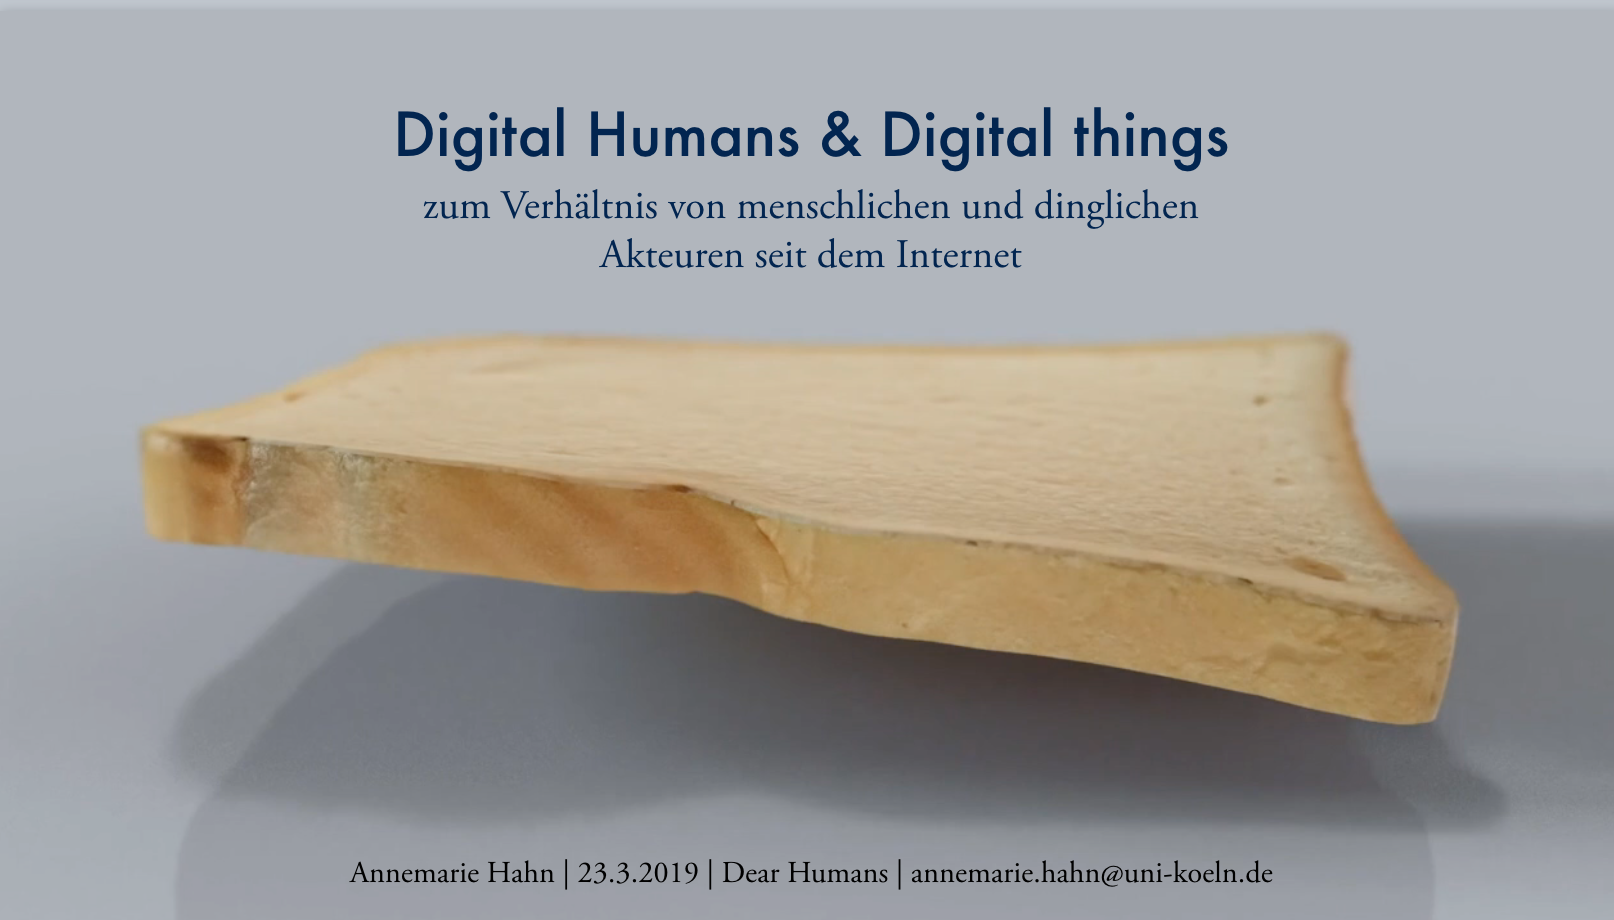 Digital Humans & Digital Things. Zum Verhältnis von menschlichen und dinglichen Akteuren seit dem Internet